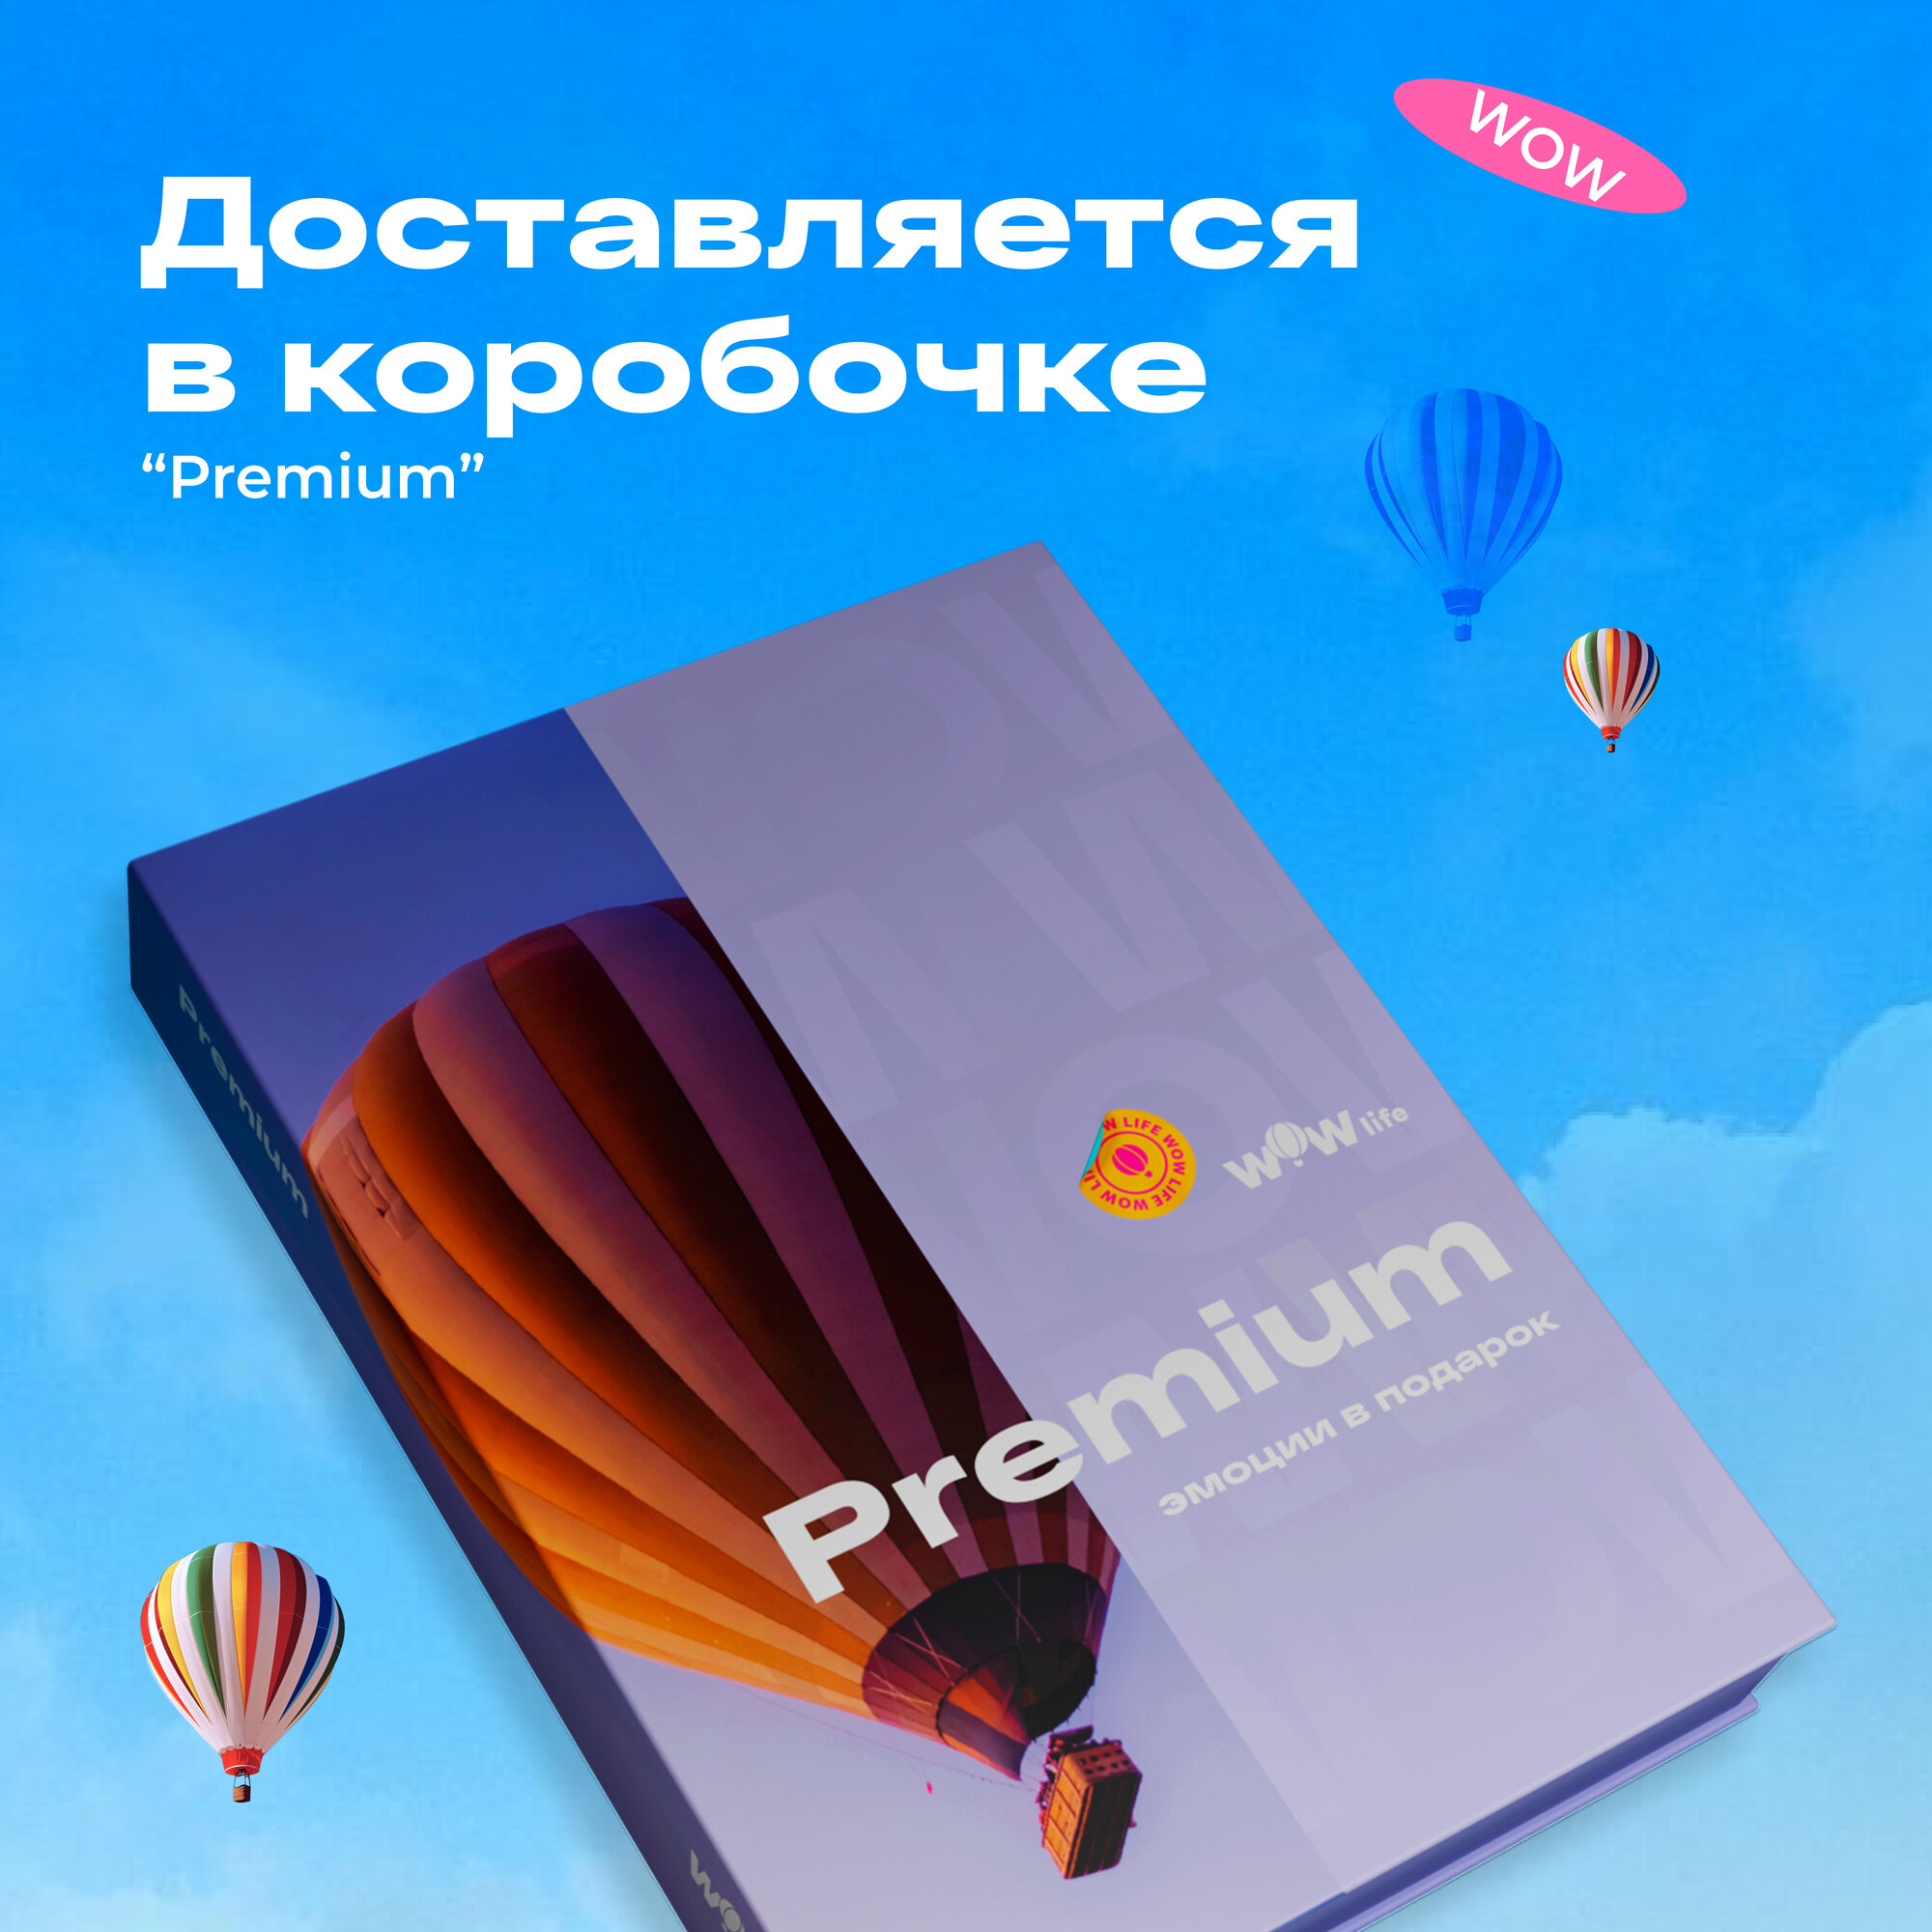 Подарочный сертификат WOWlife "Премиум" - набор из впечатлений на выбор, Санкт-Петербург